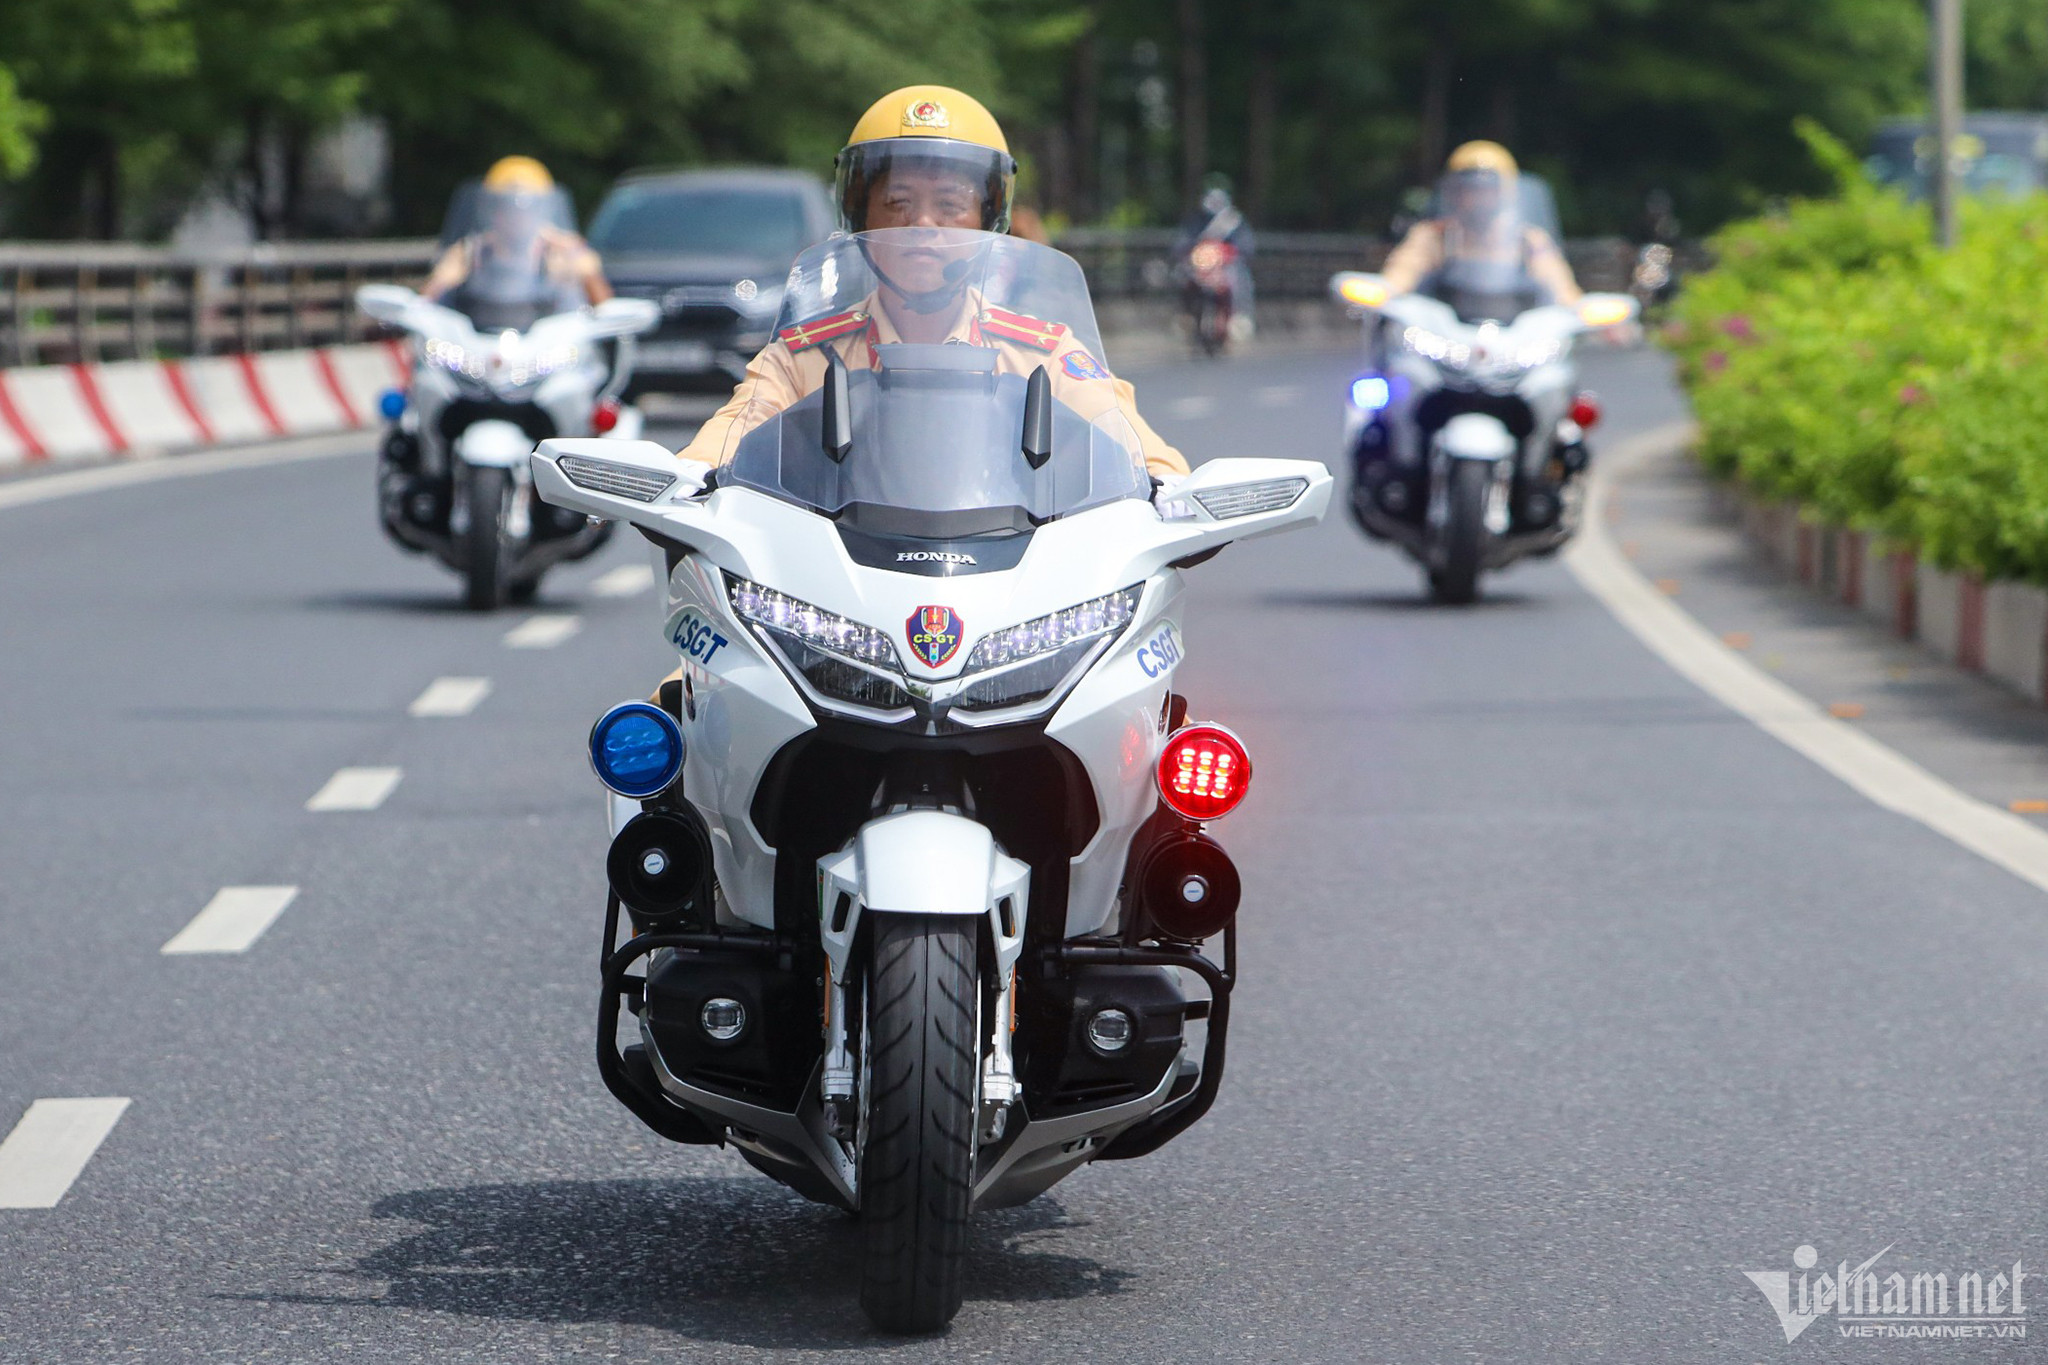 Cục CSGT bàn giao siêu mô tô cho công an 11 tỉnh, thành phố phục vụ dẫn đoàn